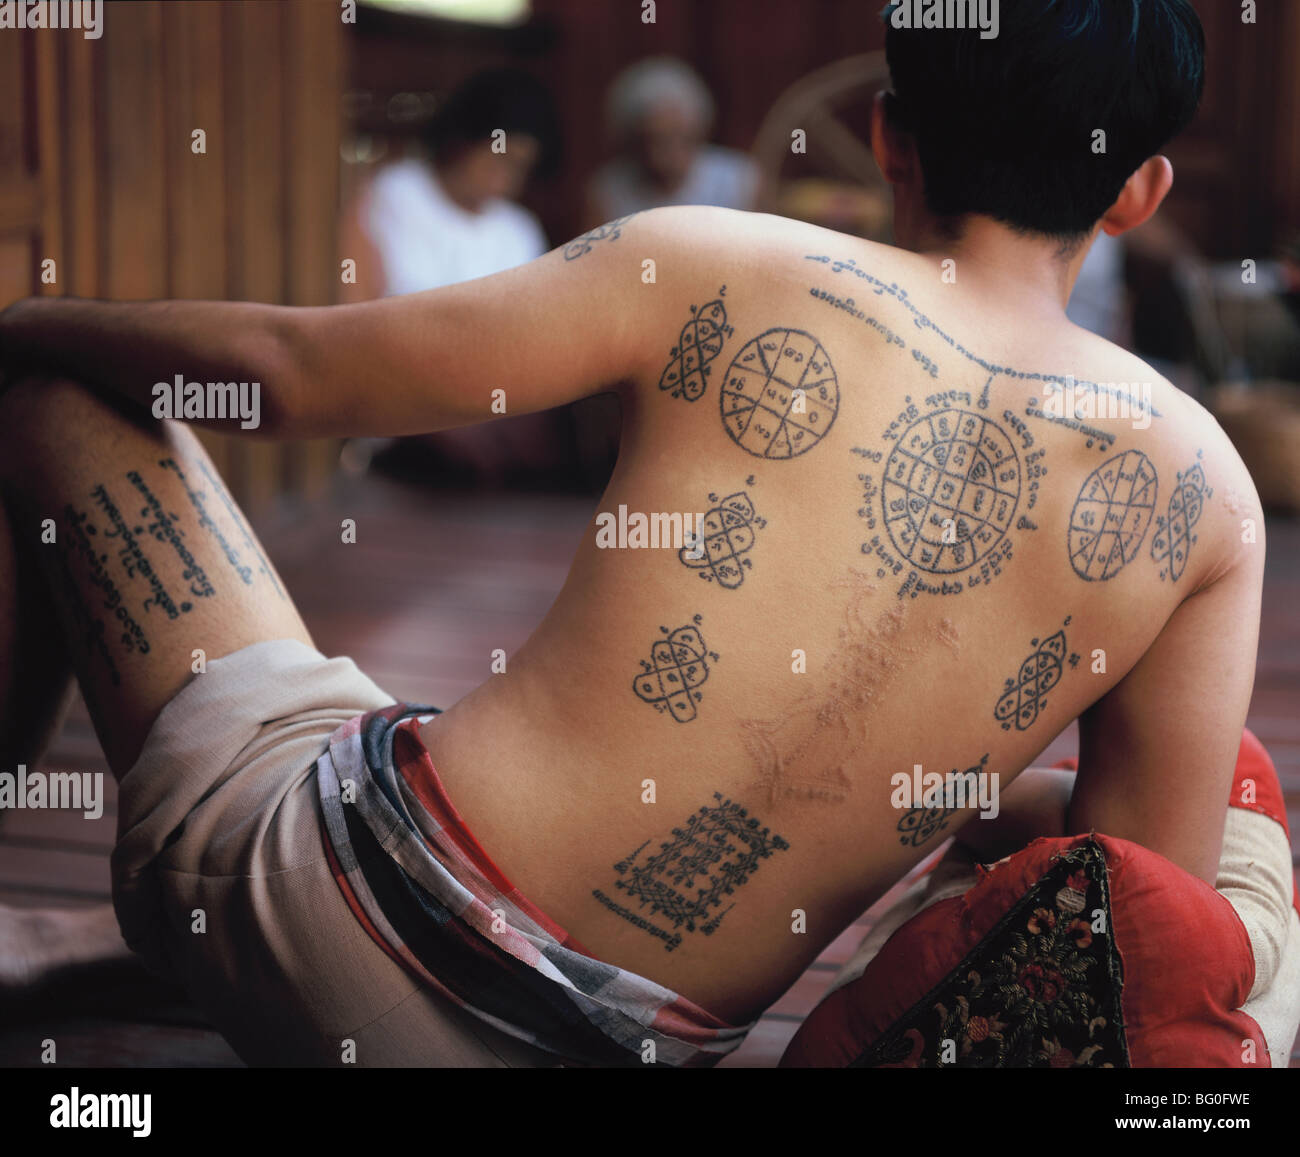 Tatuaggio, Thailandia del Nord Asia sud-orientale, Asia Foto Stock